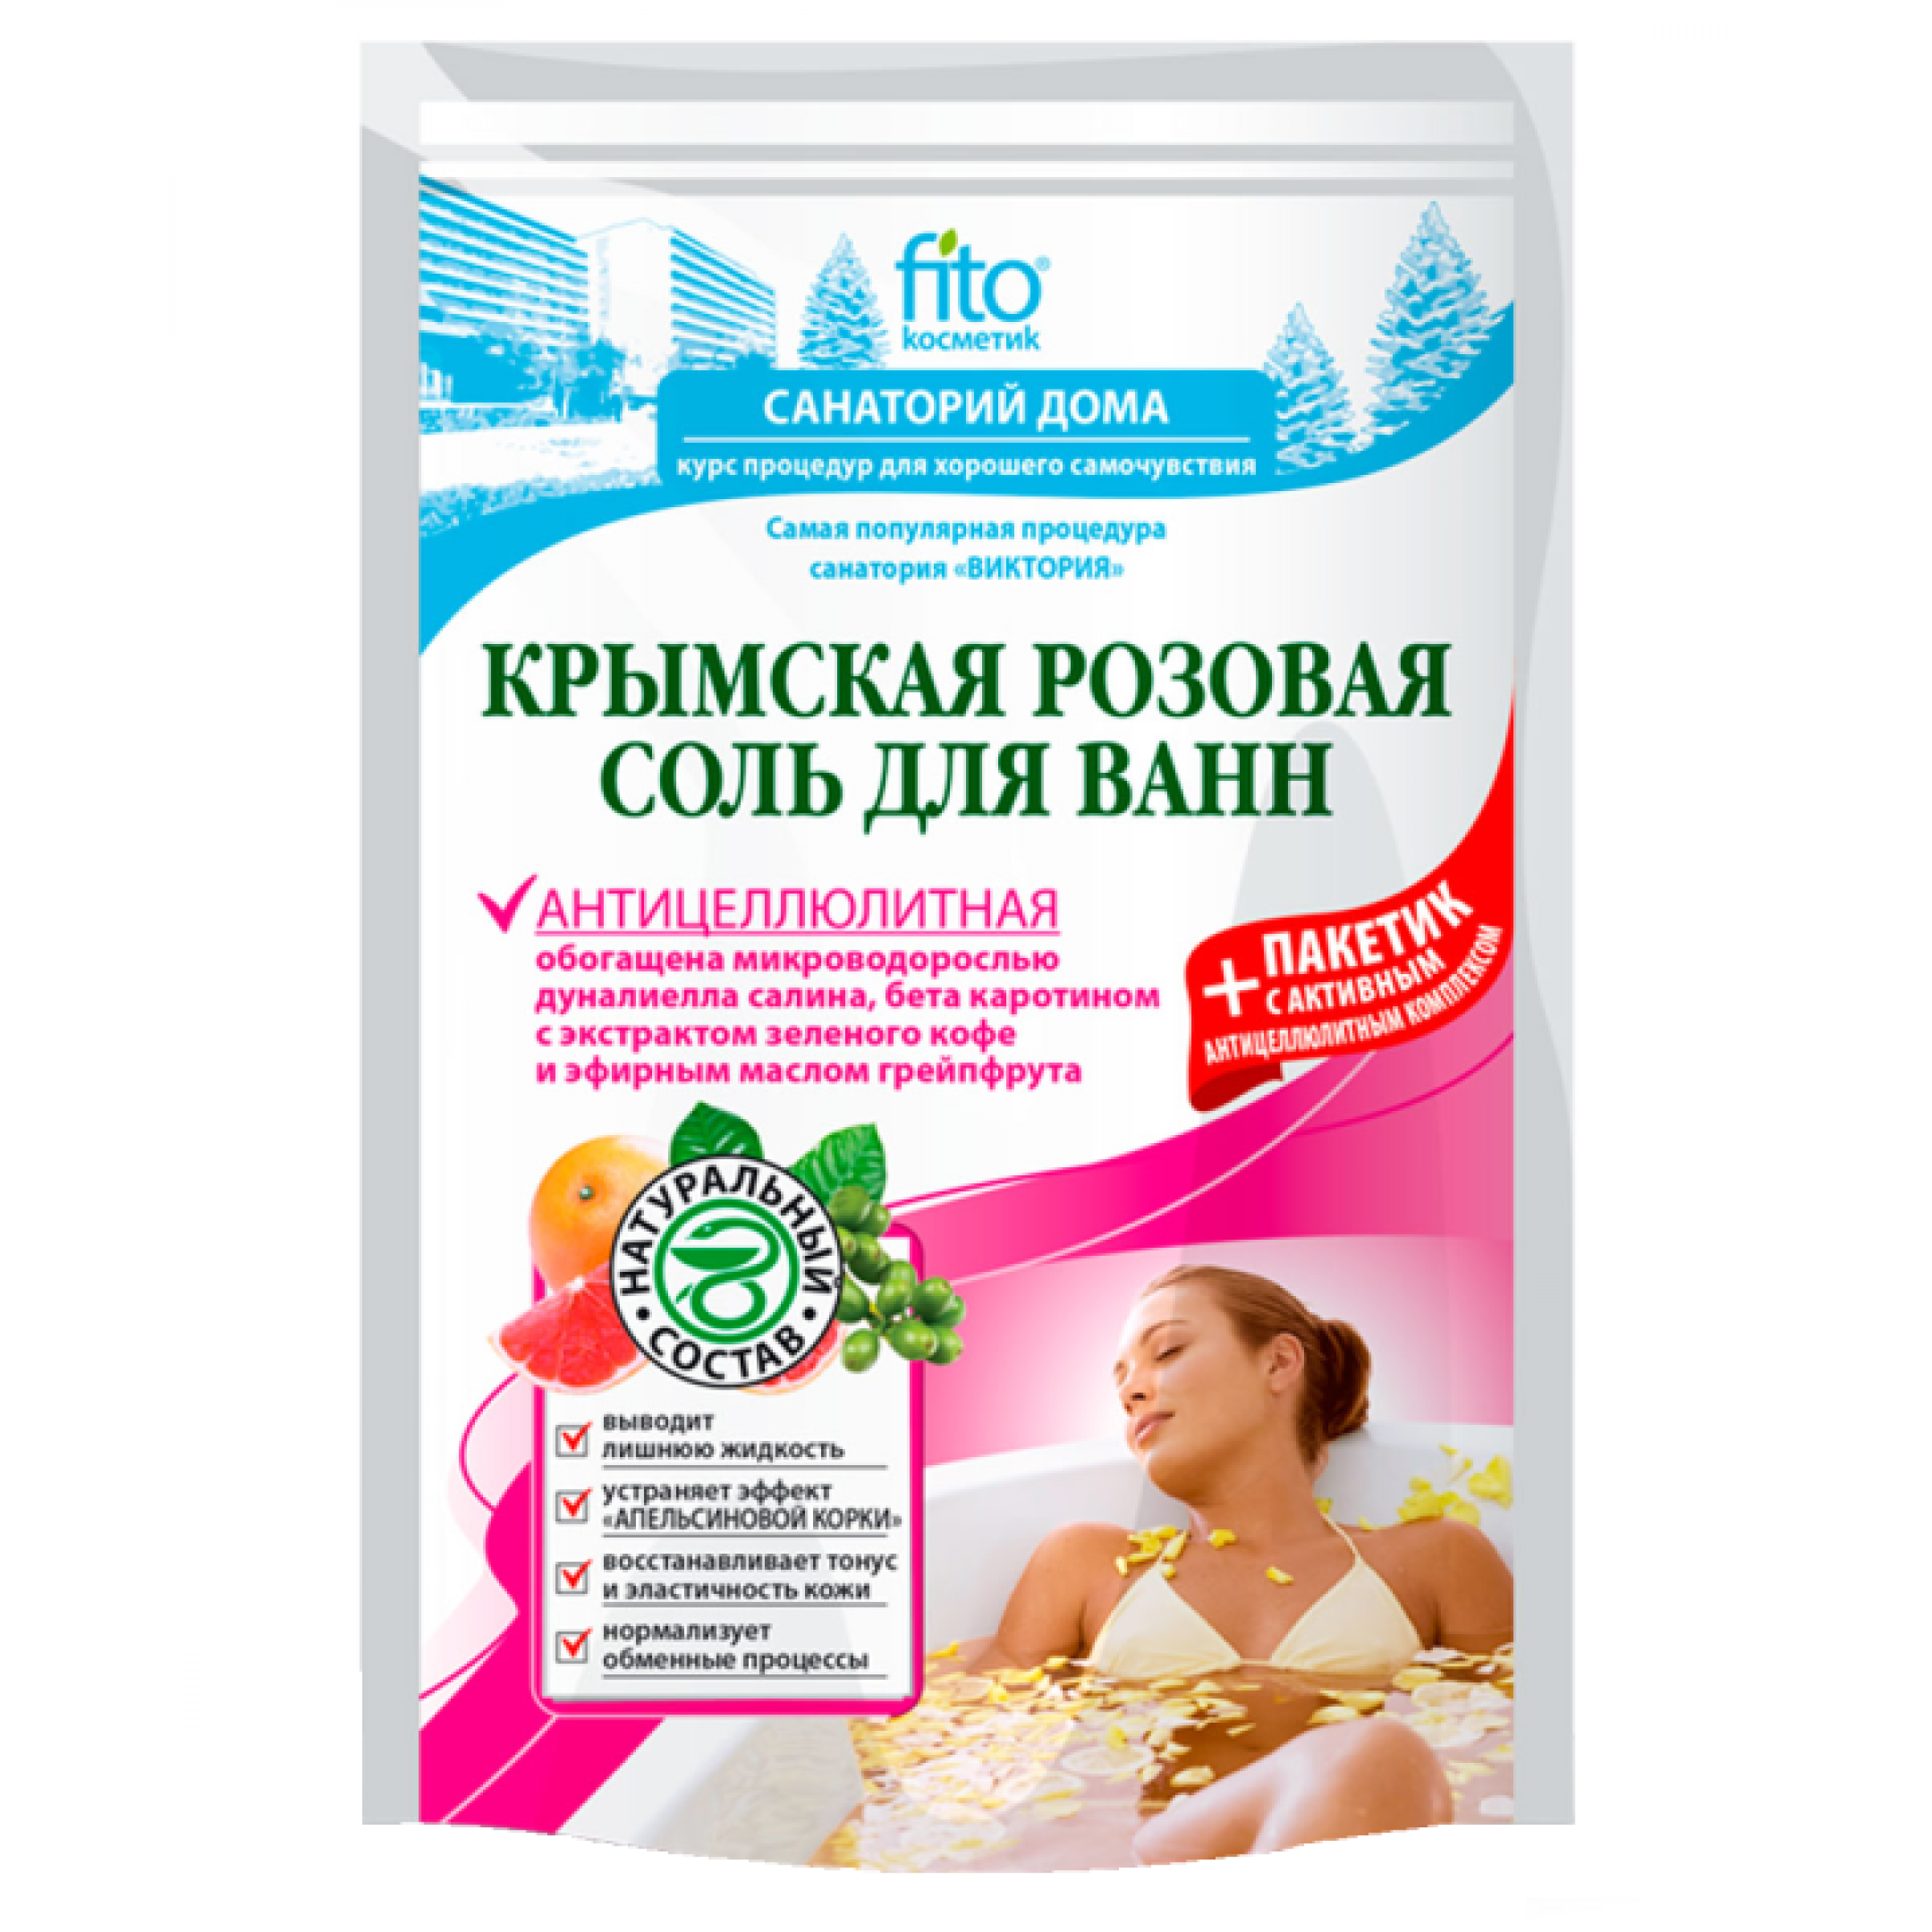 Соль для ванн ФИТОкосметик Крымская розовая Антицеллюлитная серии Санаторий Дома 530 г